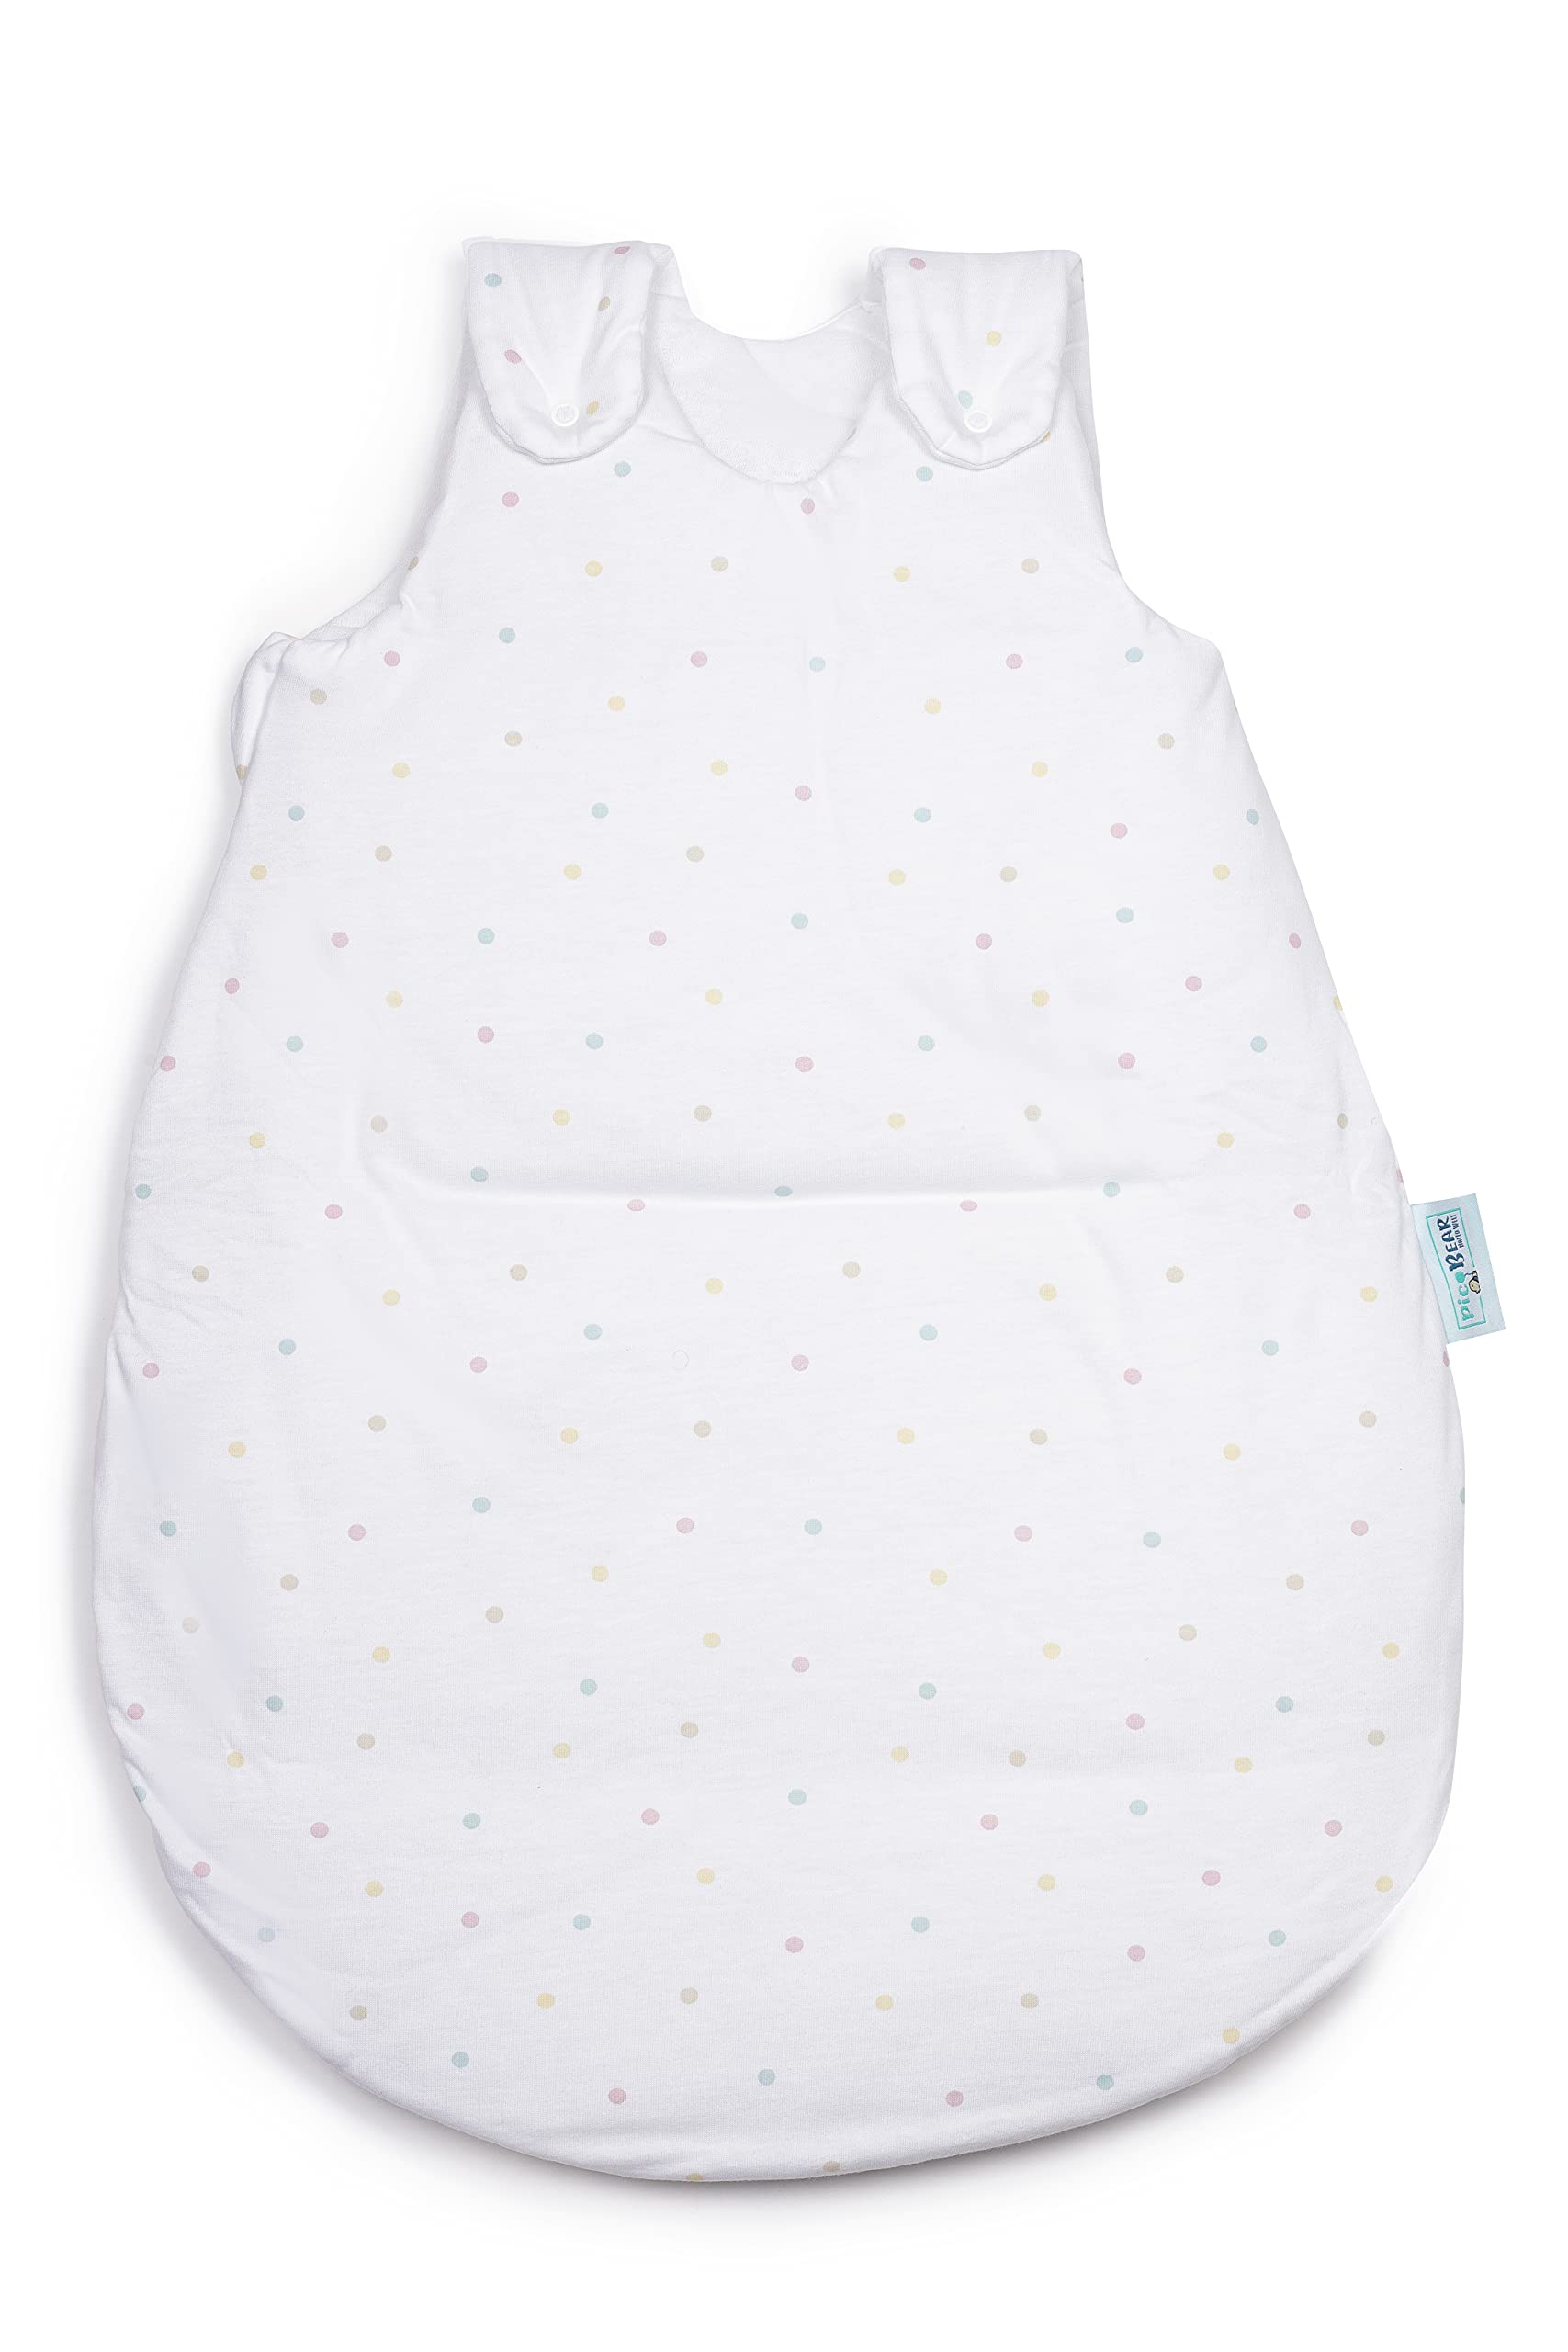 pic Bear Premium Babyschlafsack aus Jersey-Baumwolle – Atmungsaktiv, Mitwachsend und für Ganzjahres-Nutzung mit verstellbaren Größen 62/68 Punkte bunt